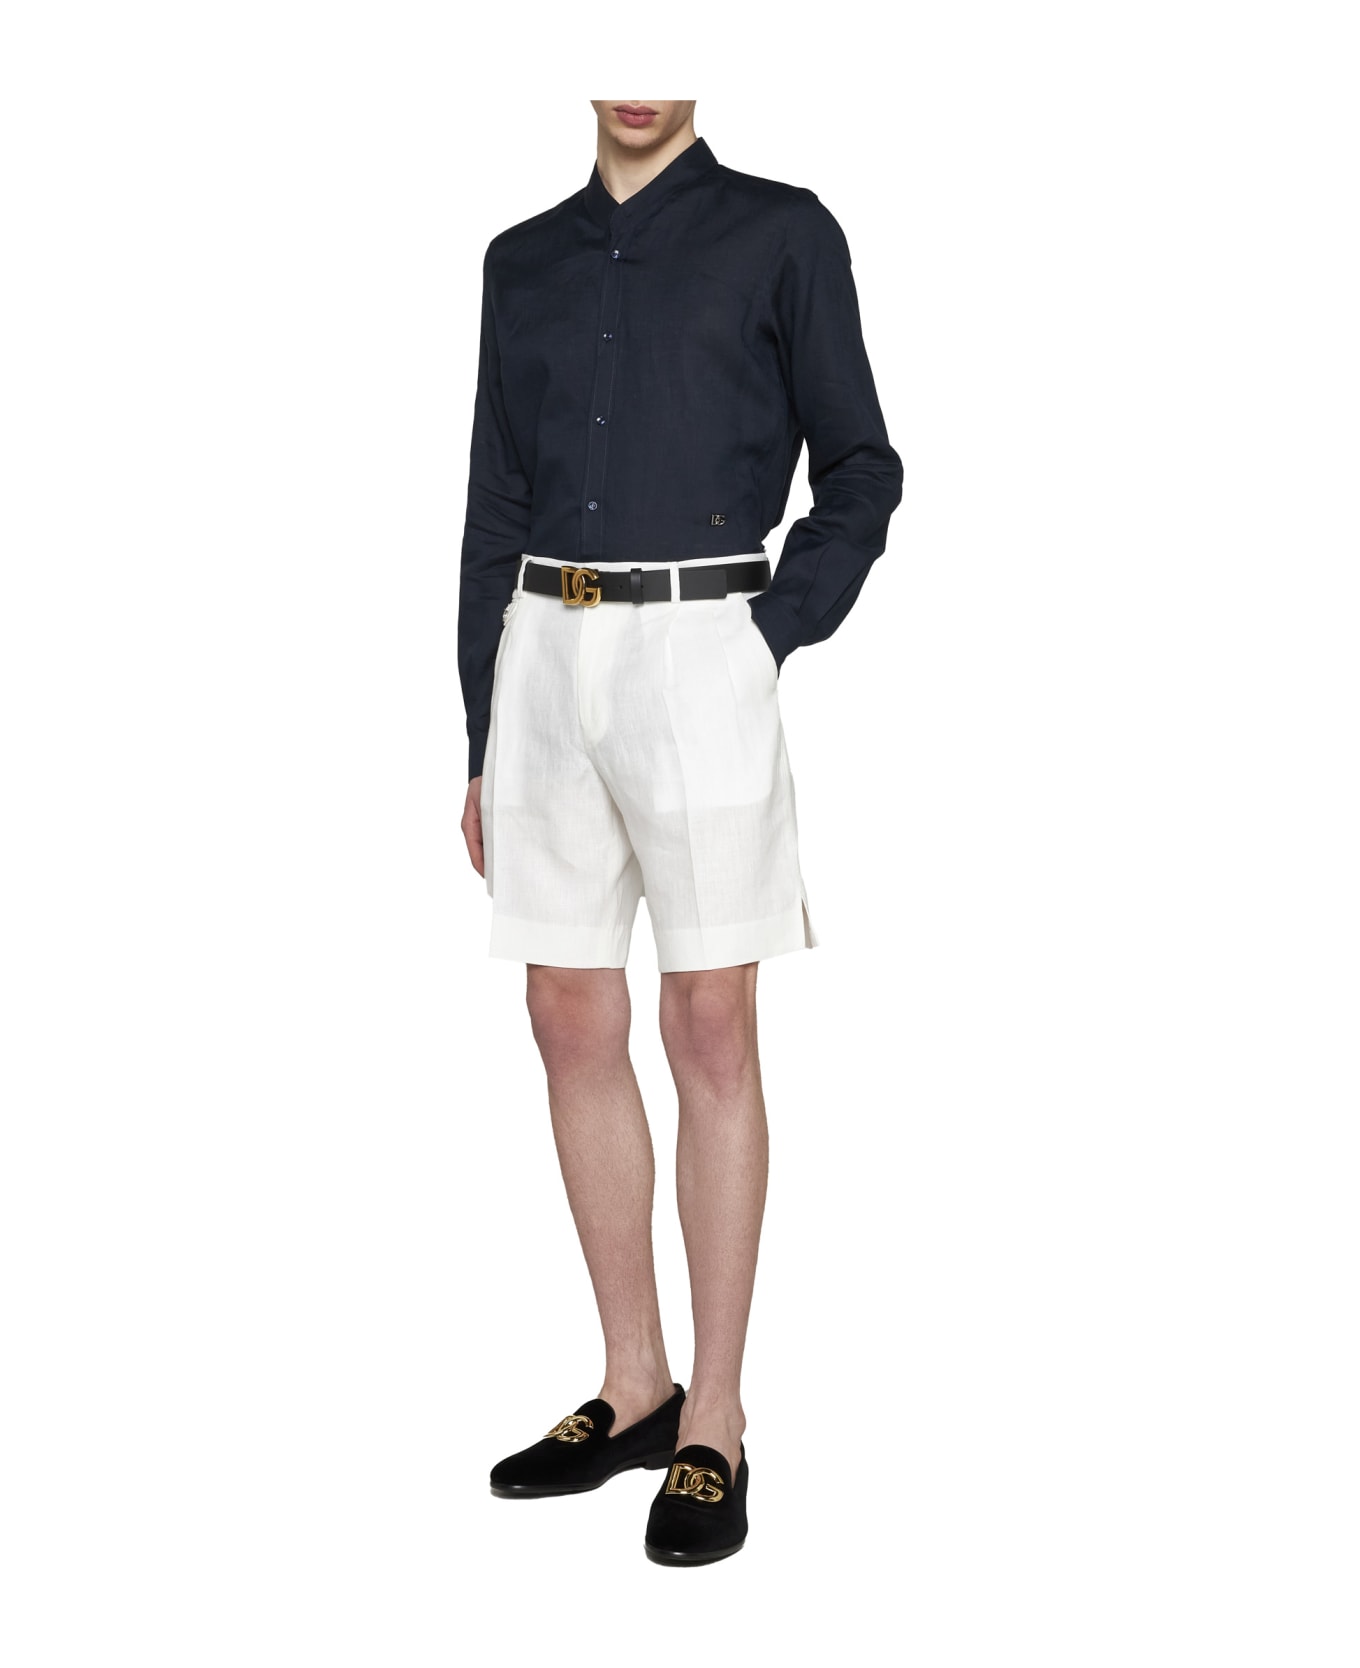 Dolce & Gabbana Slim Fit Plain Logo Plaque Shirt - Petrolio scurissimo